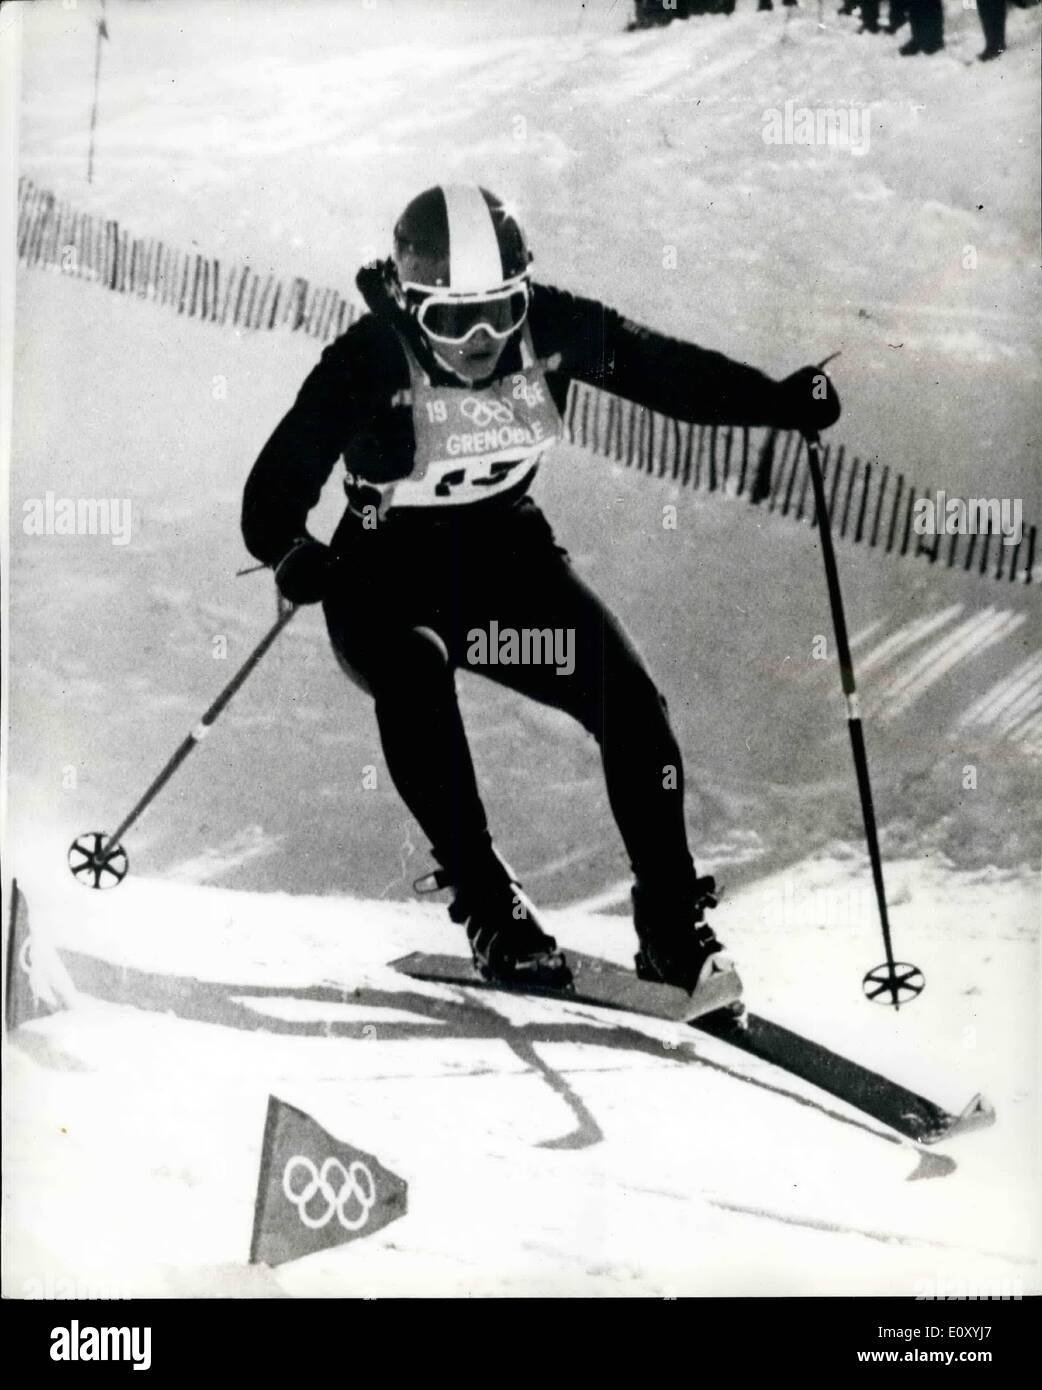 02 février 1968 - Jeux Olympiques d'hiver - Australie remporter l'or et le bronze en descente à ski de la femme : Olga Pall, un 20-year-old fille autrichienne, a remporté une victoire décisive et gagner une médaille d'or chez les femmes de la course de ski alpin à Chamrousse aujourd'hui. Isabelle Mir, de la France a été deuxième et Christihass, champion olympique en titre de l'Autriche a pris la troisième place. La photo montre l'Autrichien Olga Pall en action alors qu'elle gagne la course de descente femmes à Chamrousse aujourd'hui. Banque D'Images